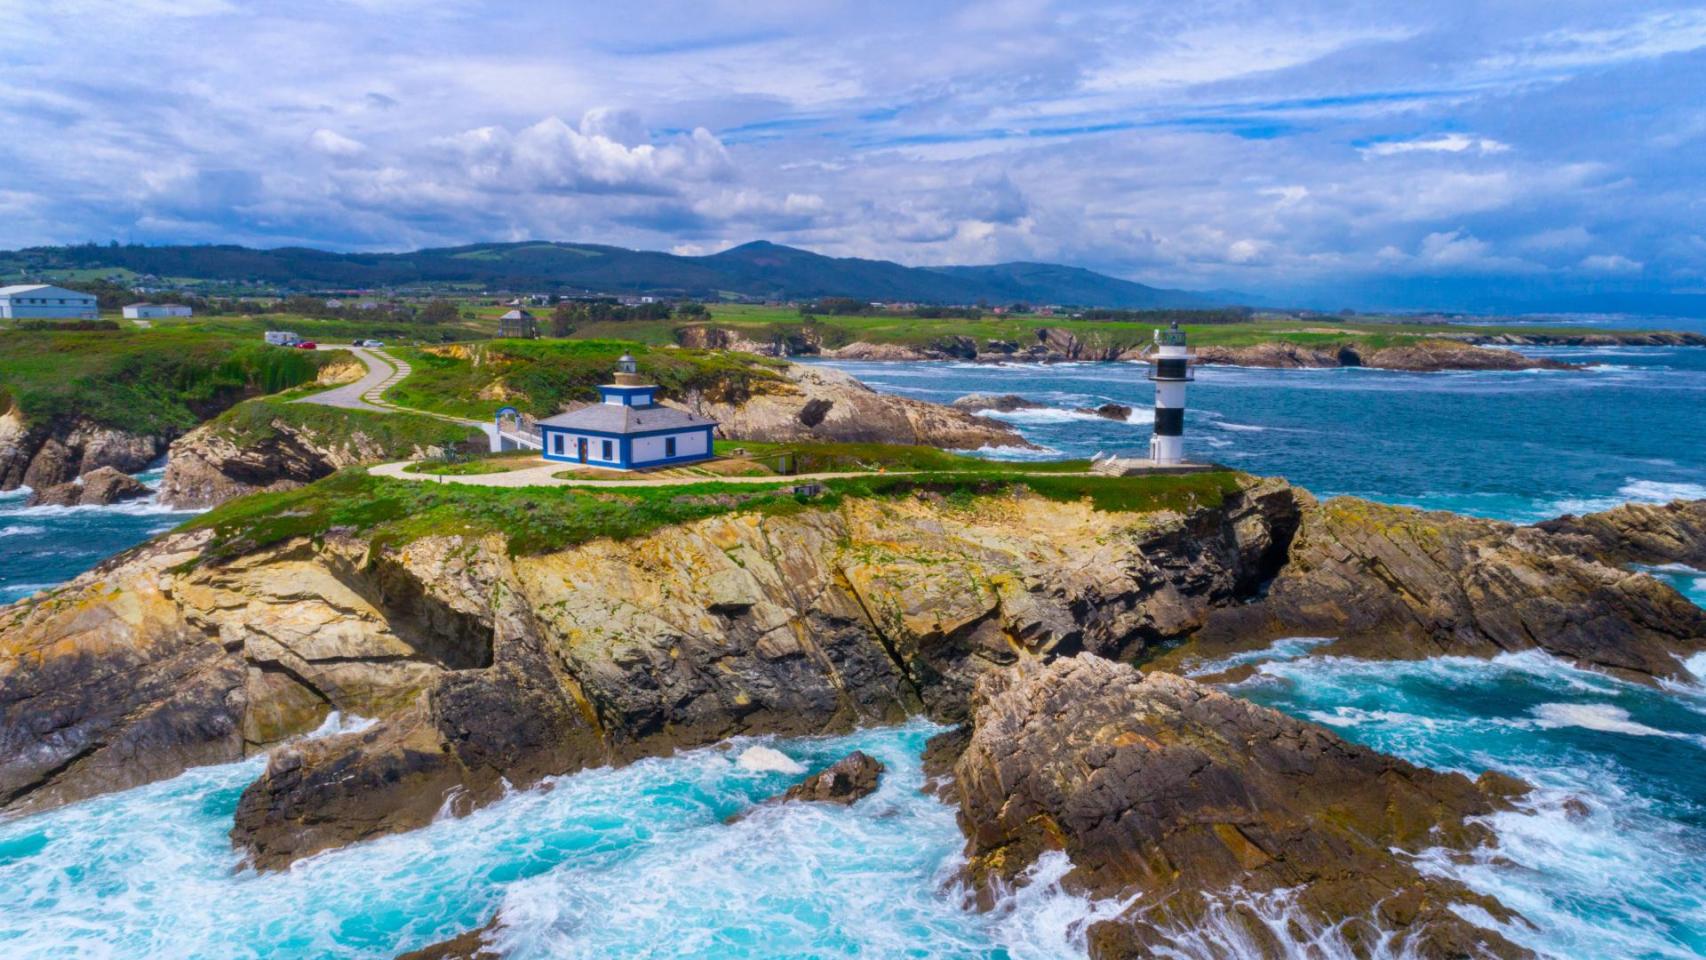 Rincones de Galicia: la pequeña Illa Pancha en Ribadeo